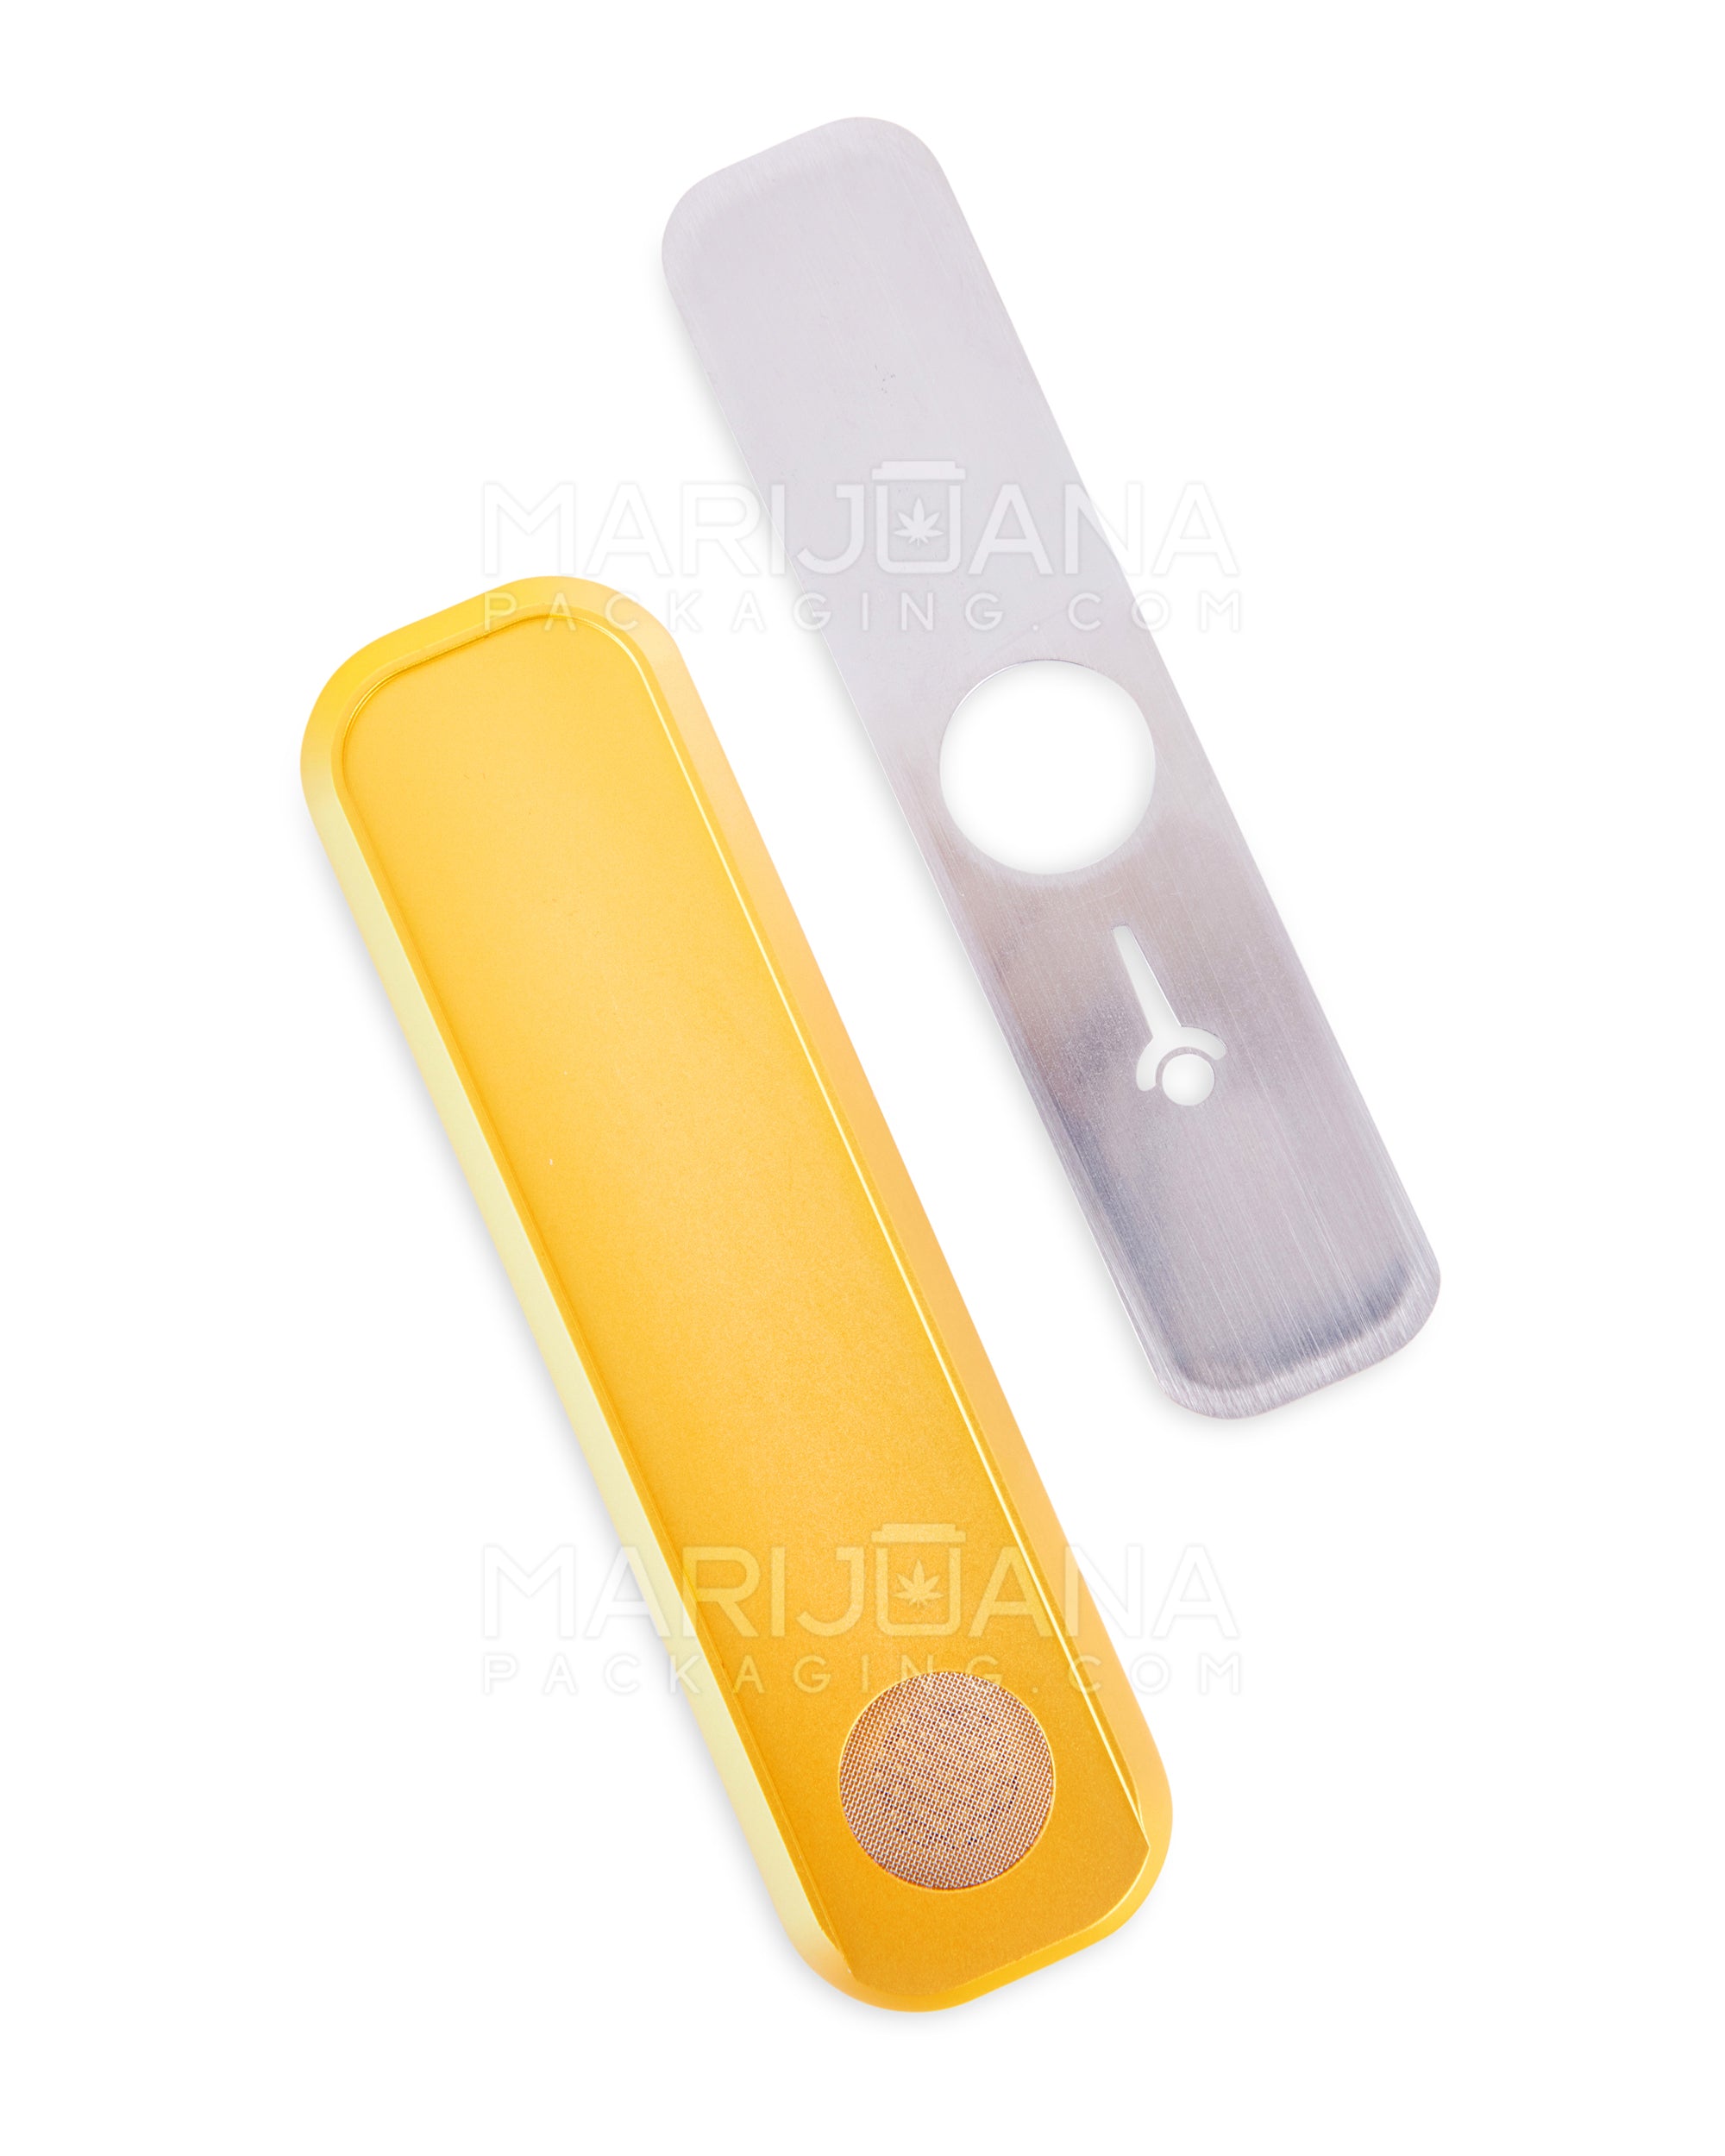 GENIUS PIPE | Mini Color Magnetic Slider Pipe | 5in Long - Metal - Gold - 5